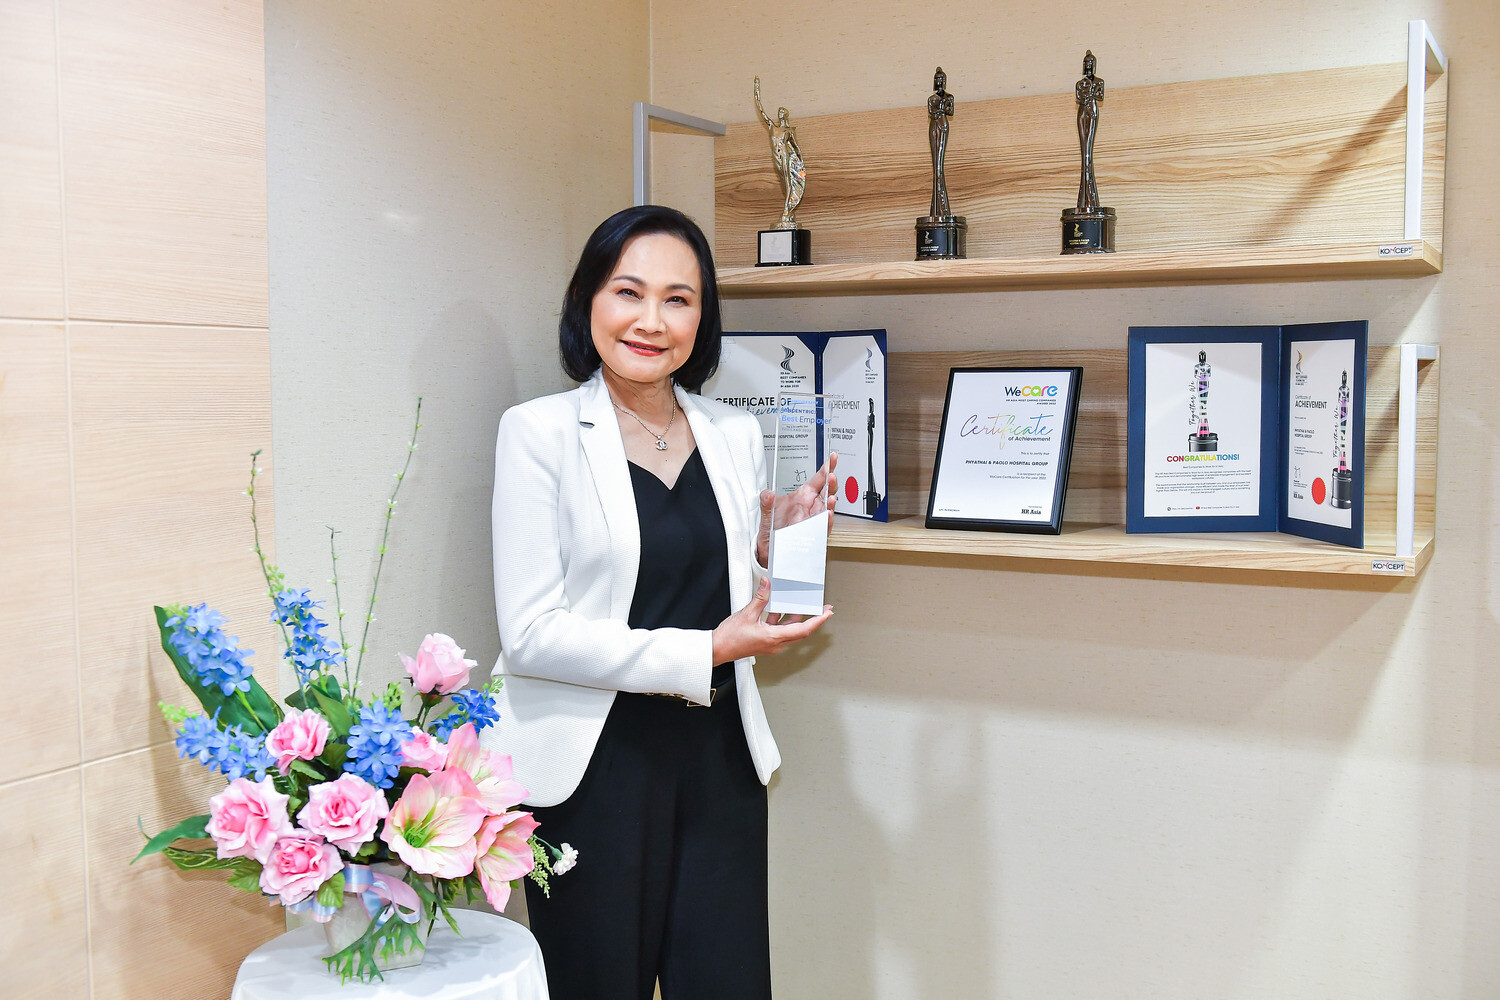 เผยเส้นทางความสำเร็จ เครือโรงพยาบาลพญาไทและเปาโล กับรางวัล สุดยอดนายจ้างดีเด่น "Best Employers Thailand Hall of Fame 2022"